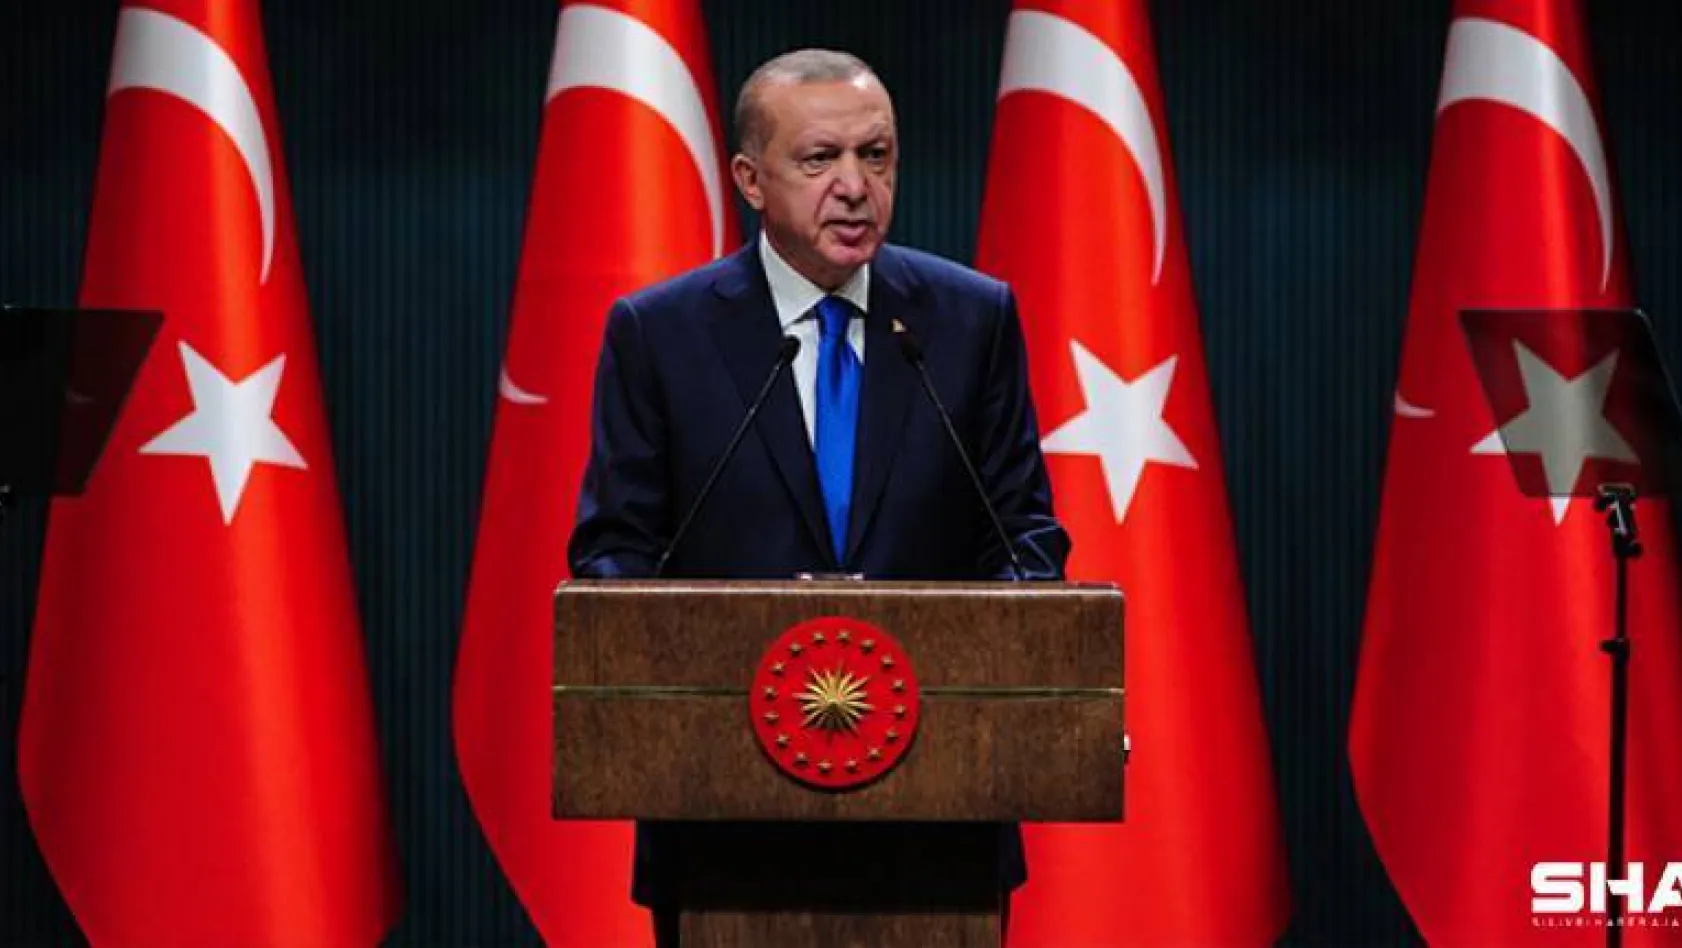 Cumhurbaşkanı Erdoğan yeni kontrollü normalleşme sürecini açıkladı